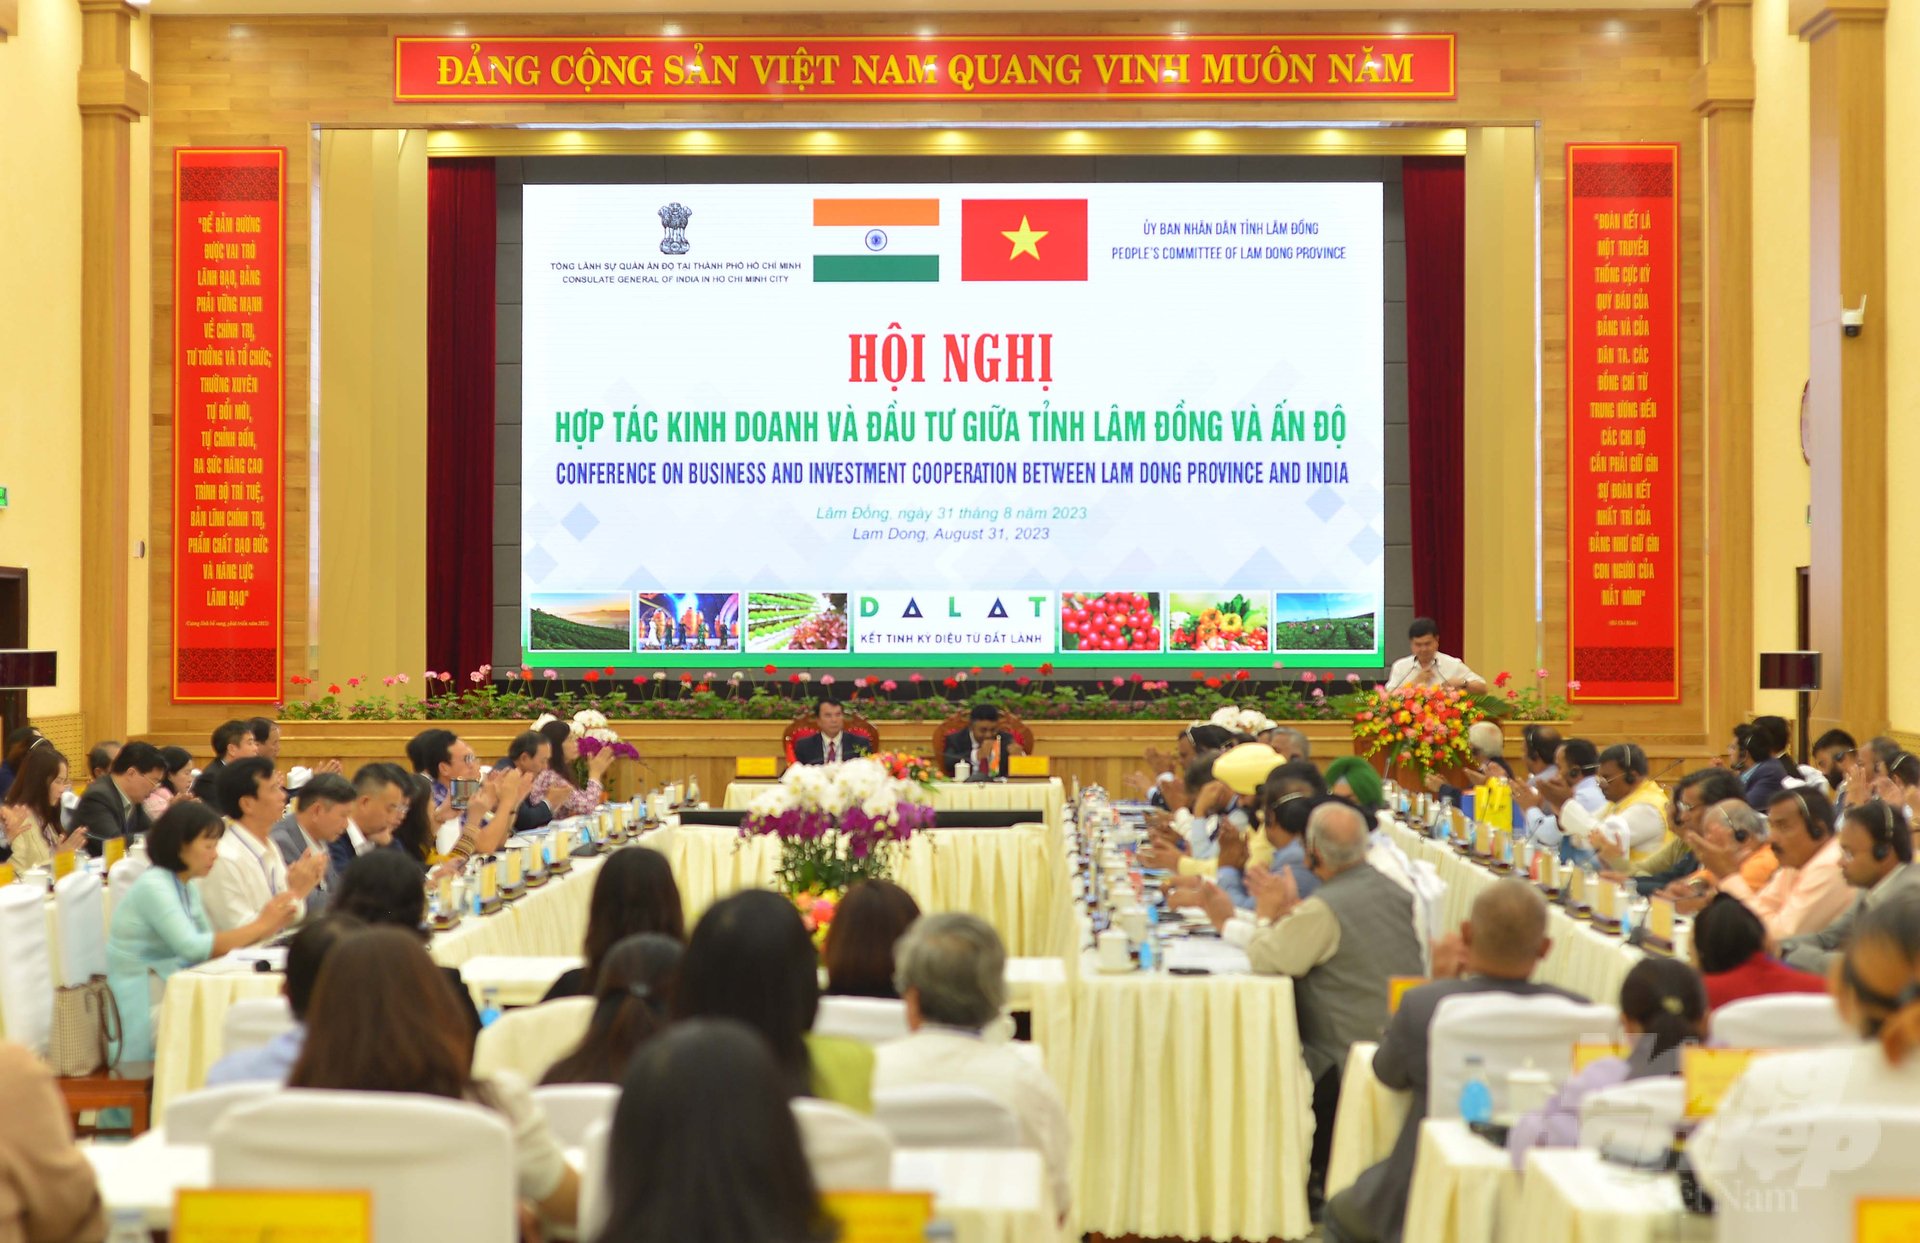 Hội nghị Hợp tác kinh doanh và đầu tư giữa Lâm Đồng và Ấn Độ được tổ chức tại TP Đà Lạt (Lâm Đồng) chiều 31/8. Ảnh: Minh Hậu.